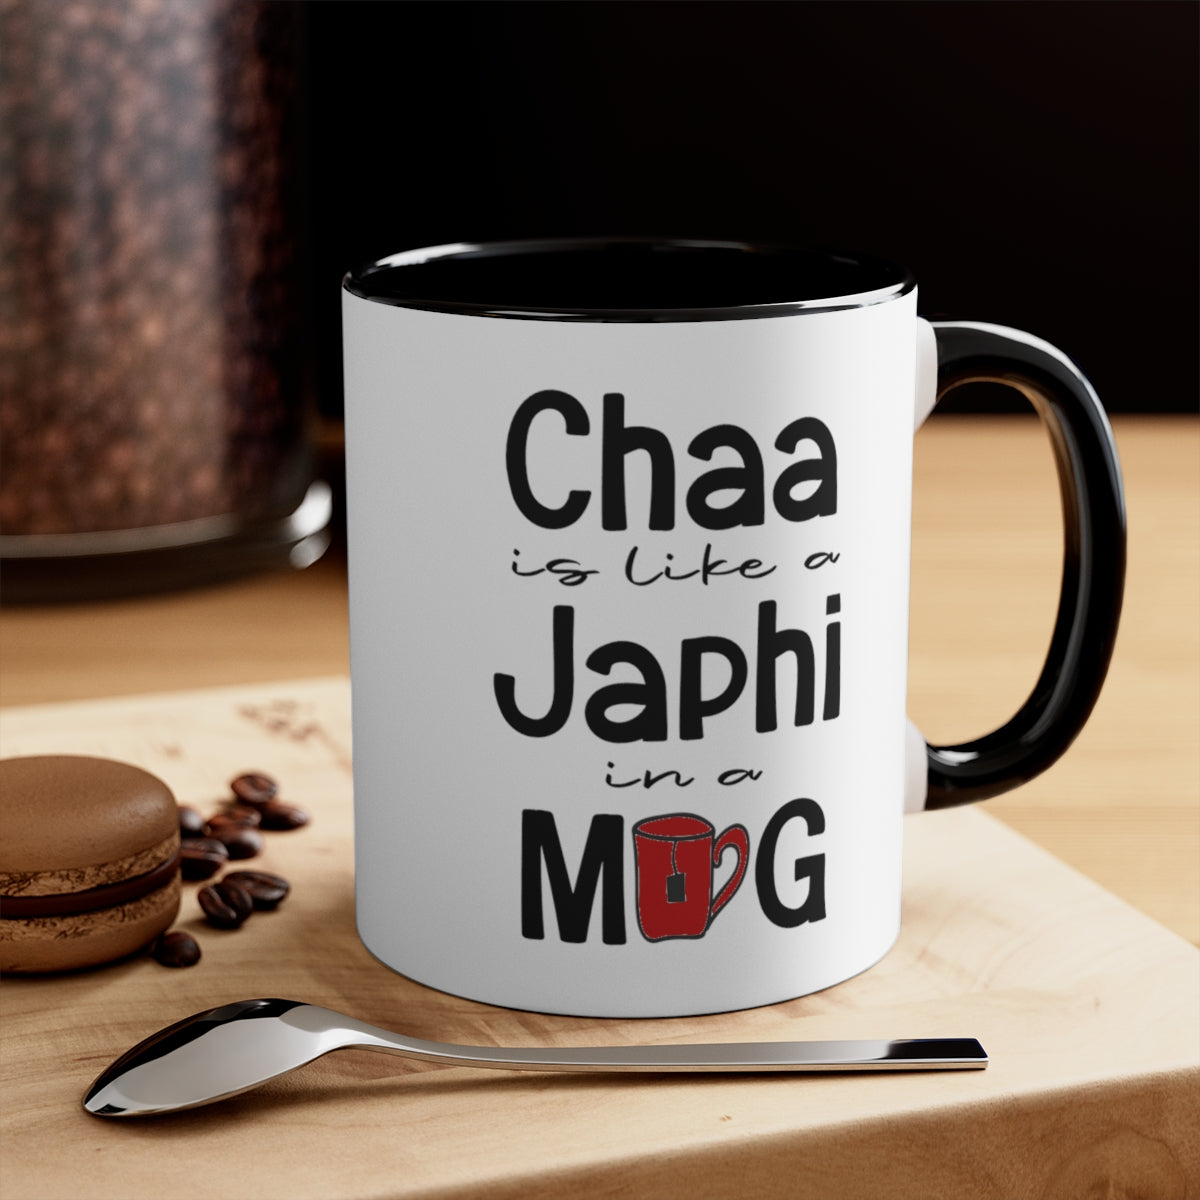 
                  
                    Chaa is like a Japhi Mug
                  
                